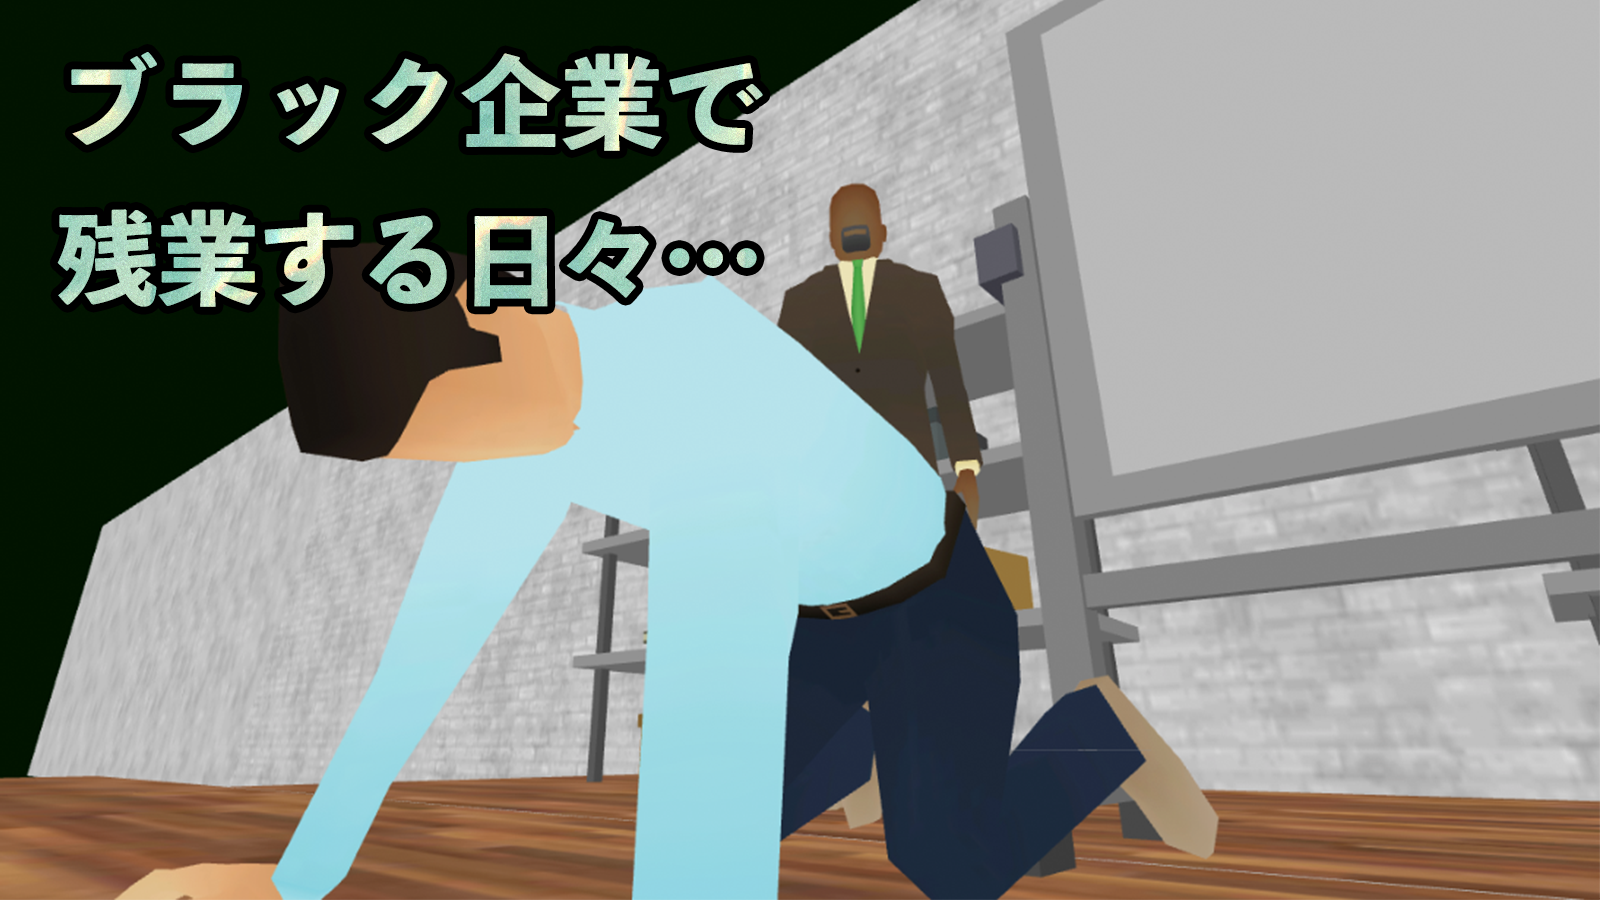 Screenshot 1 of Simulador de escritório japonês 1.9.6